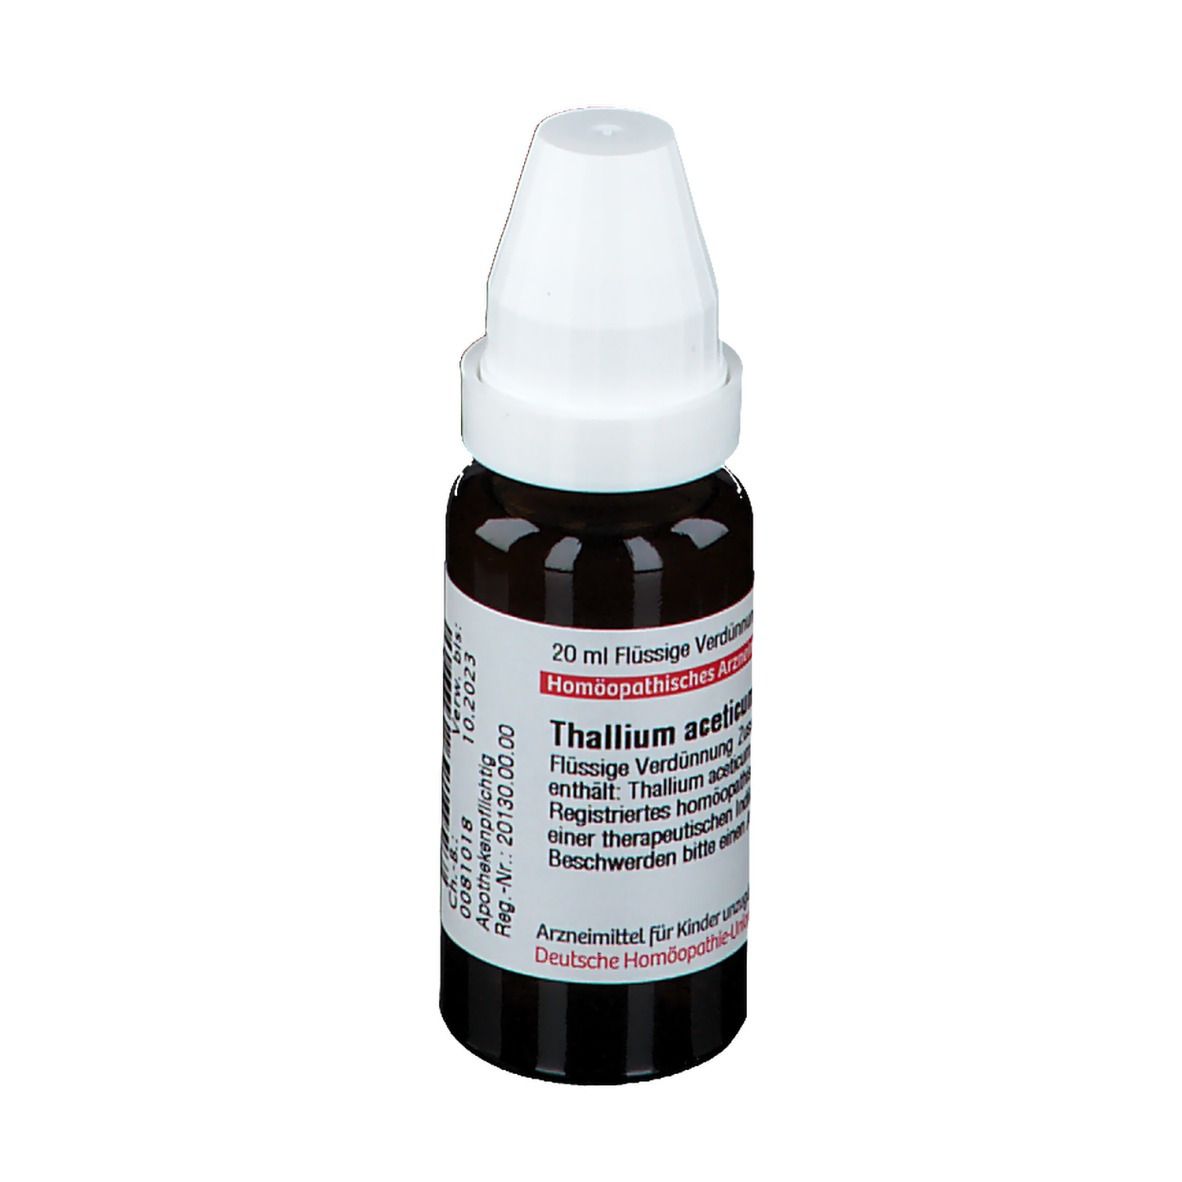 DHU Thallium Aceticum D12